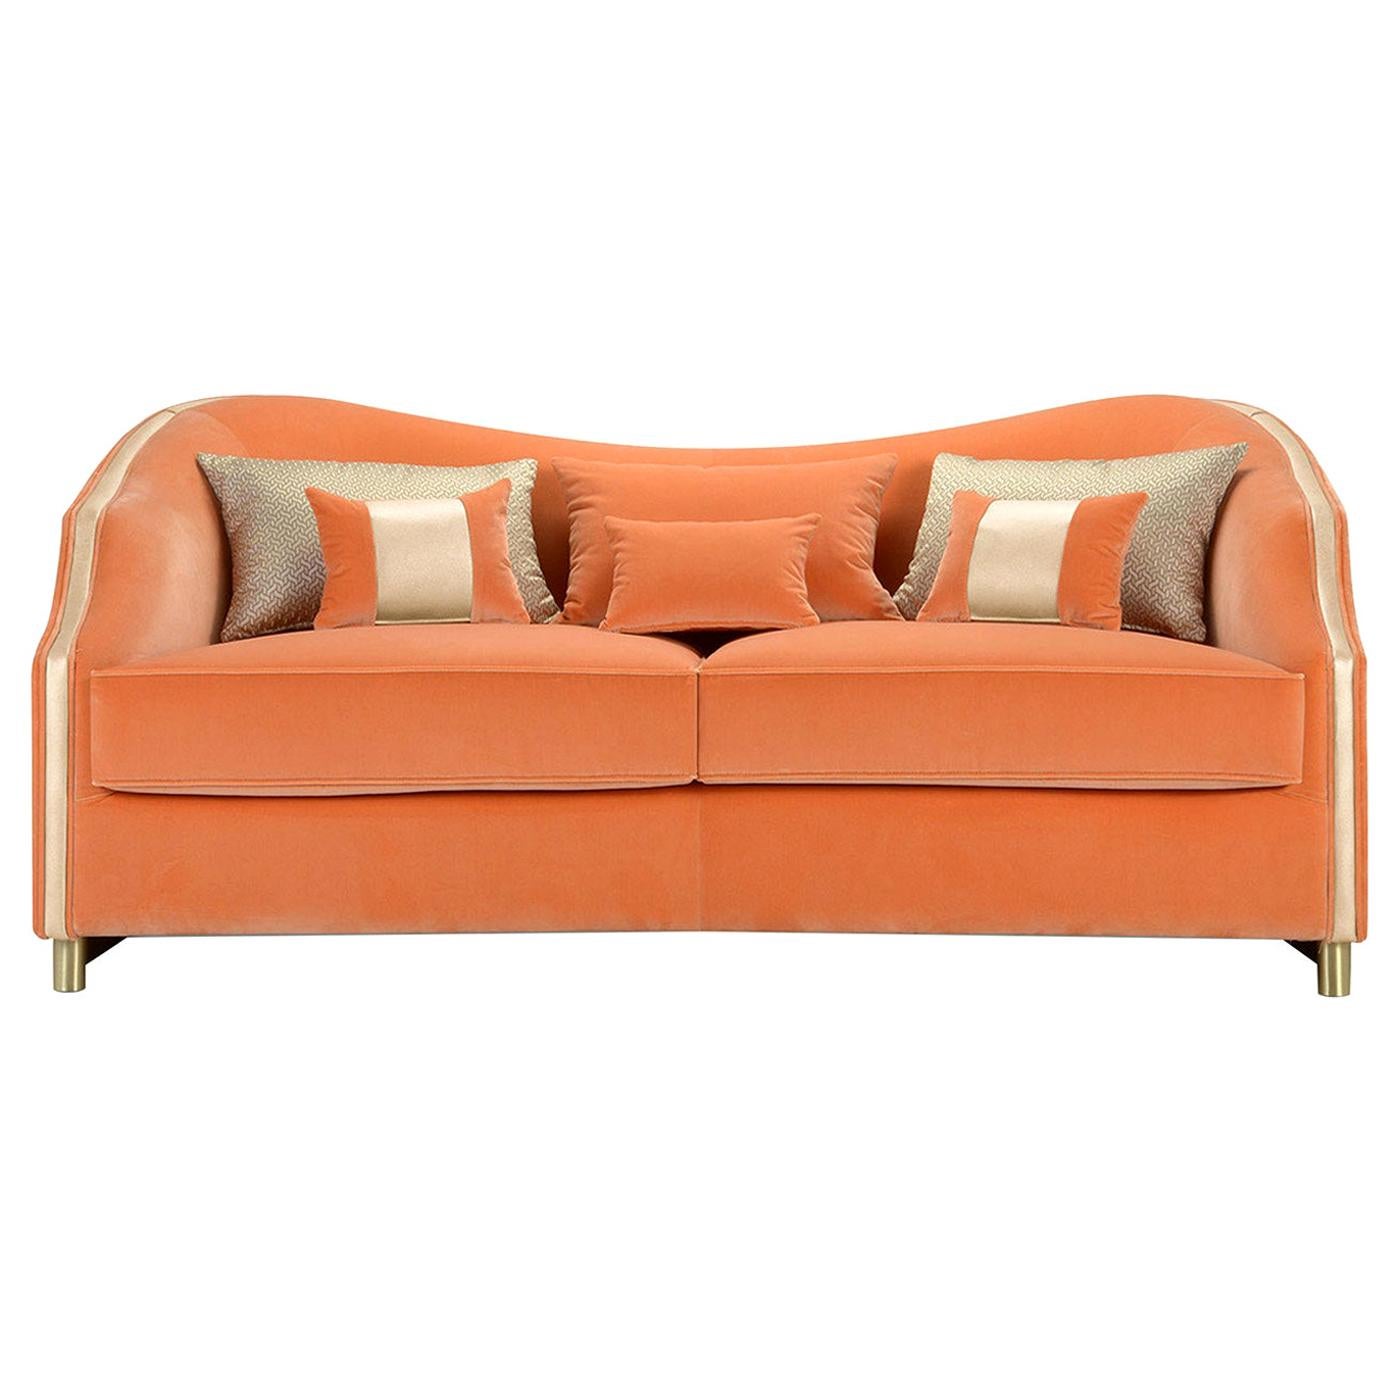 Cleio Orange 2-Seater Sofa